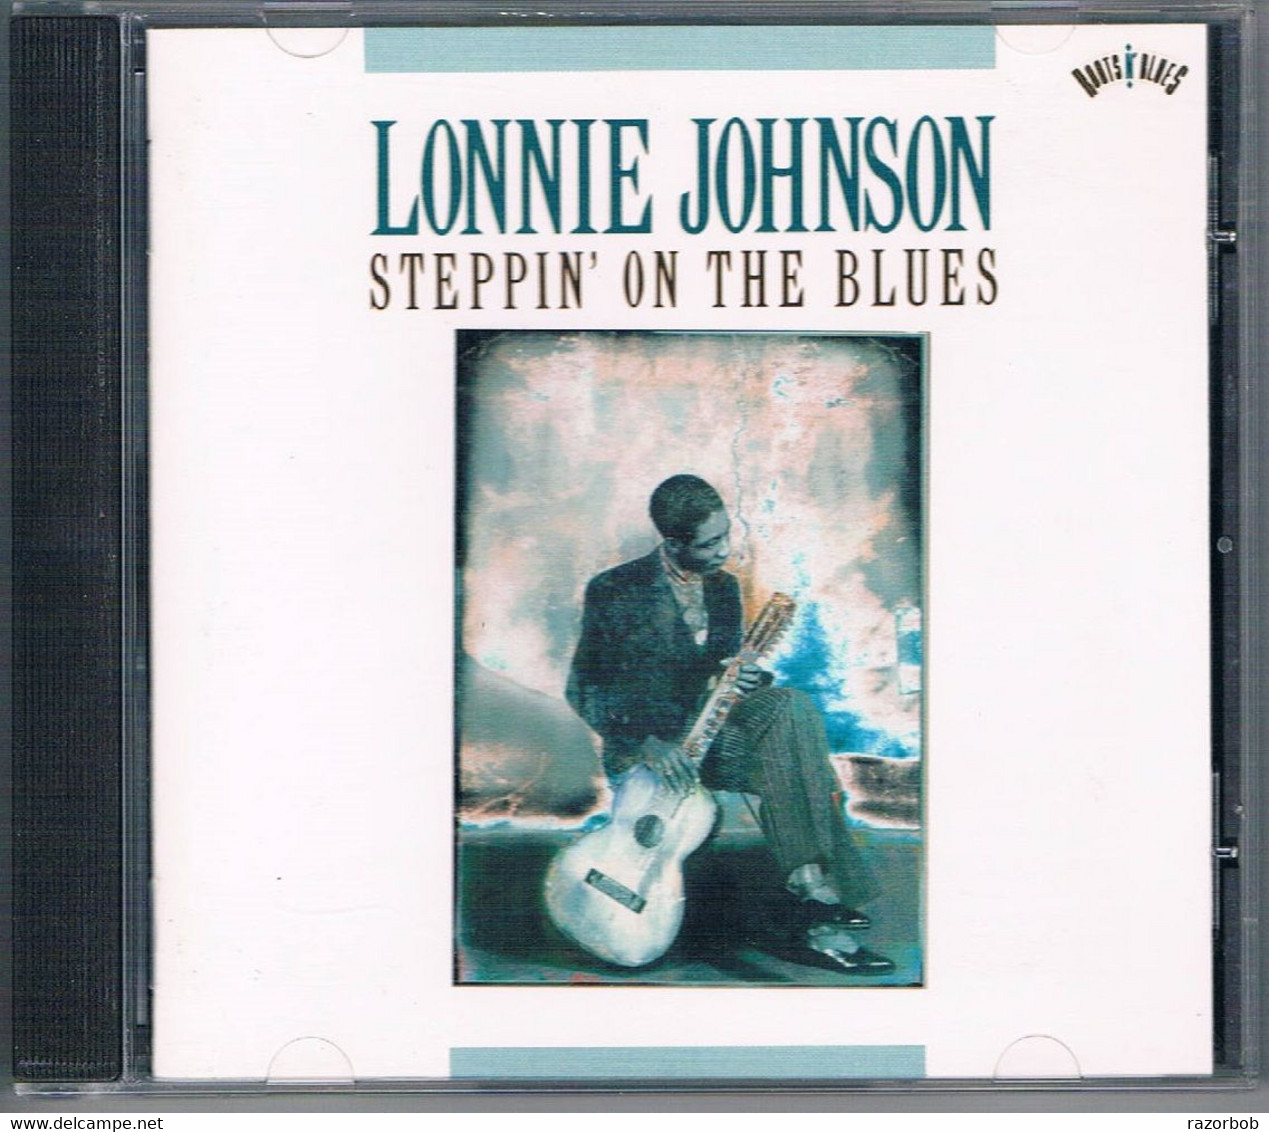 Lonnie Johnson - Blues